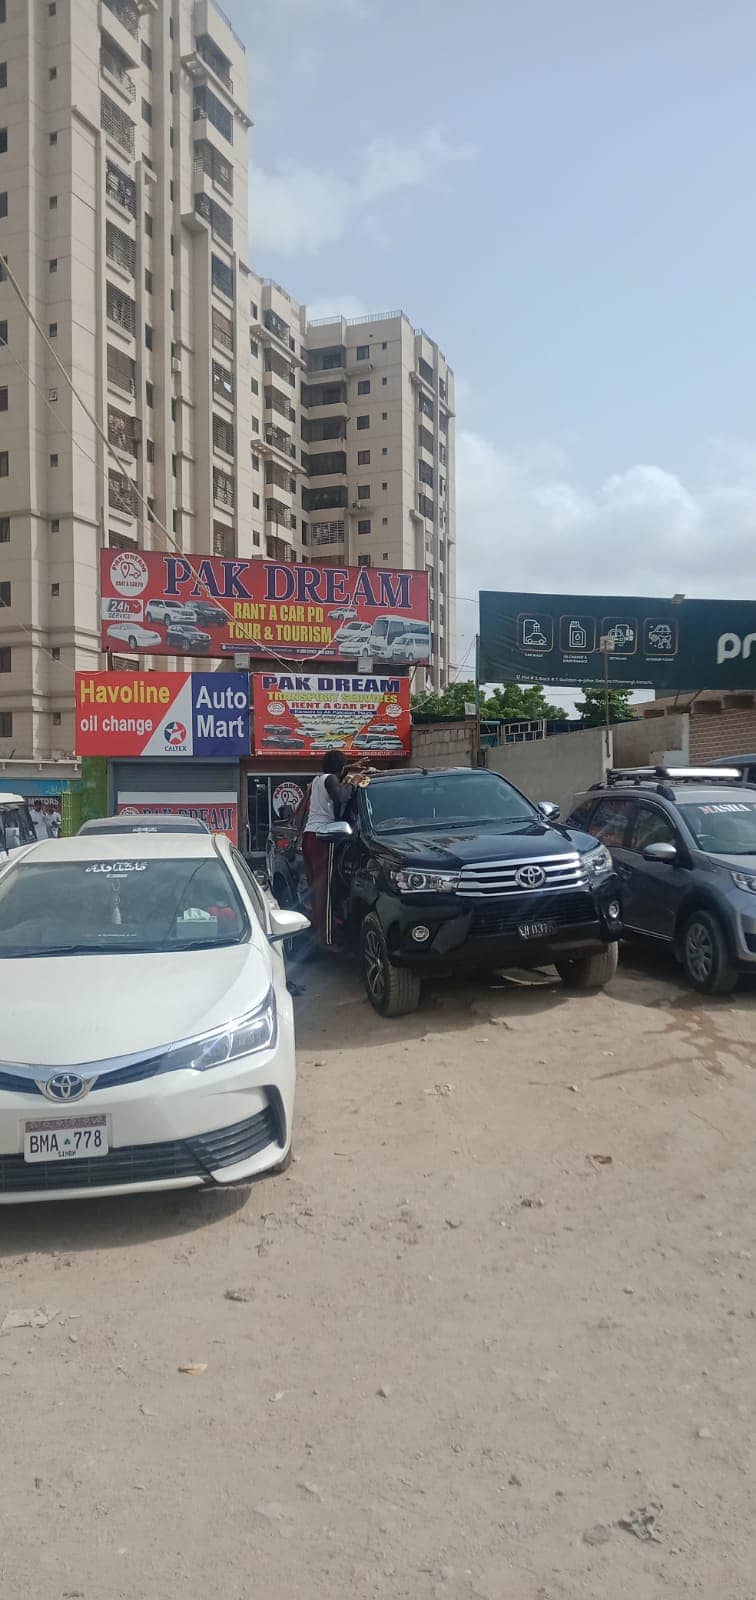 Rent a car | Car rental | Rent a car service in Karachi 5